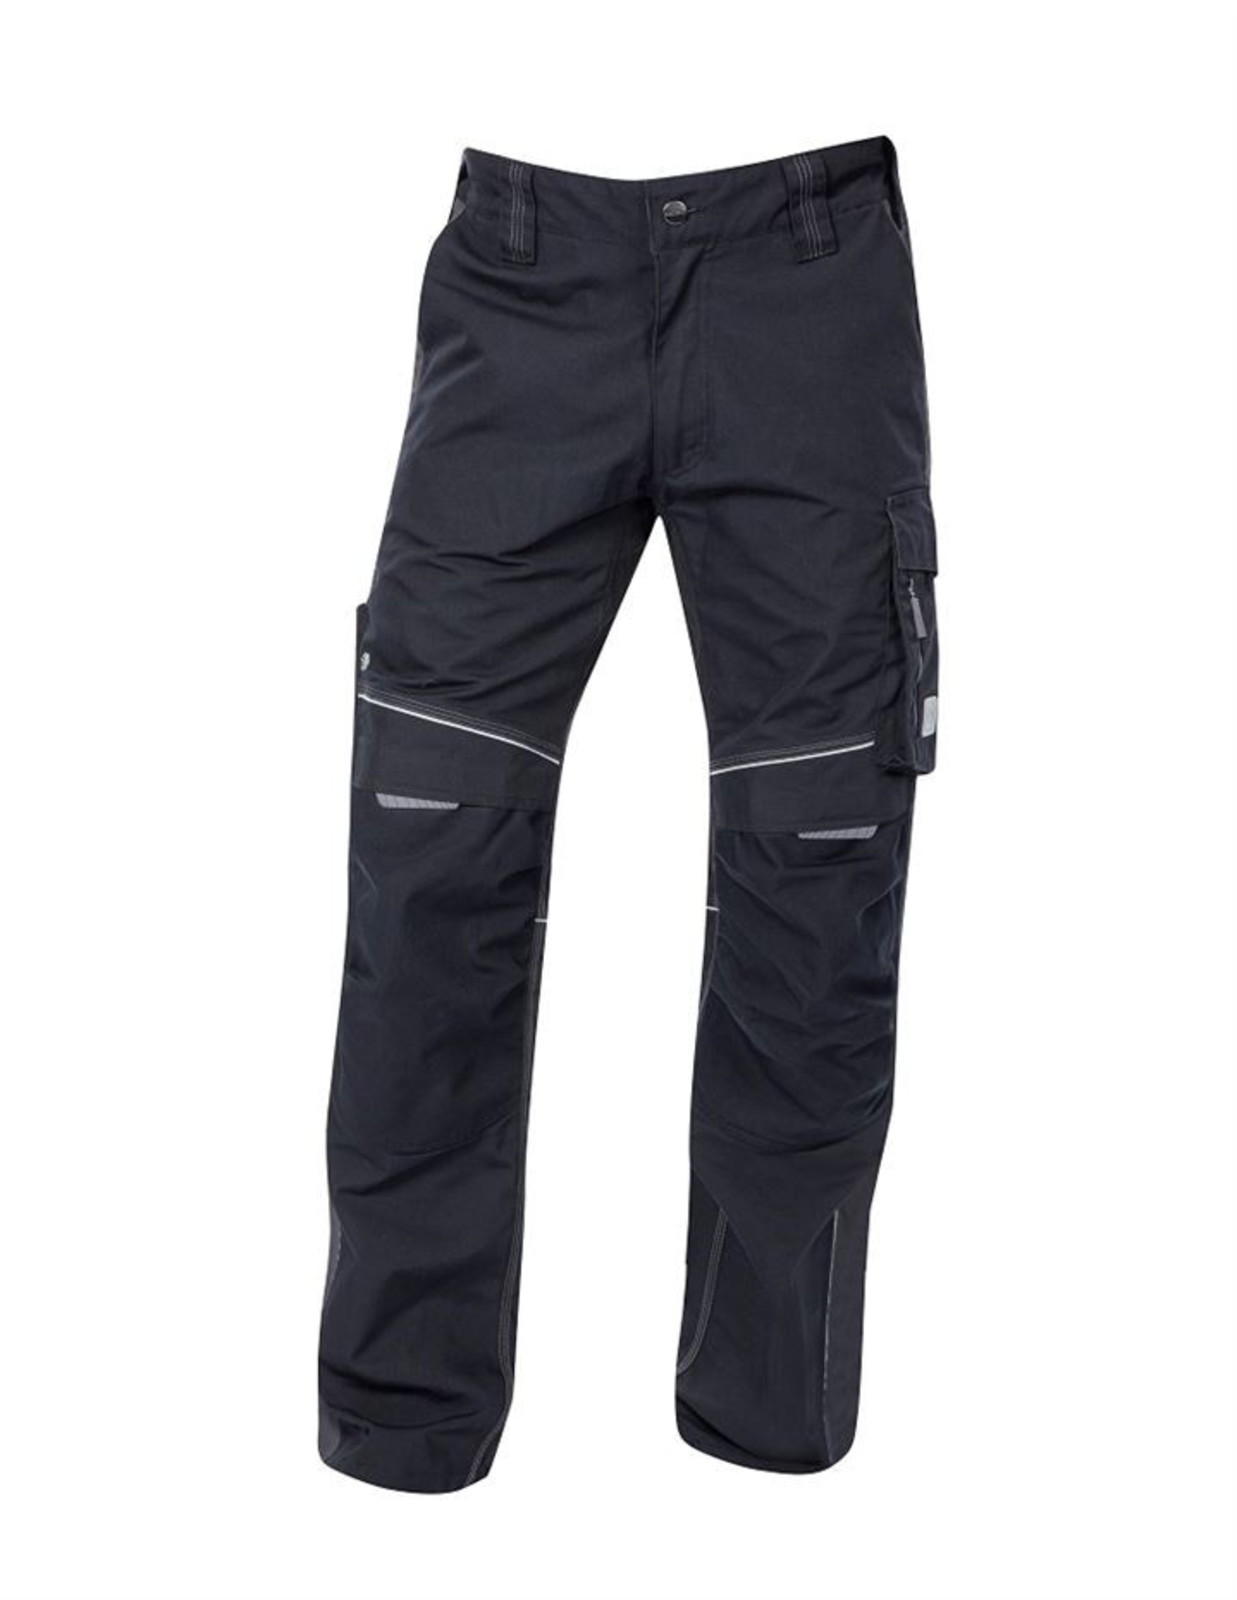 Pánske montérkové nohavice Ardon Urban+ - veľkosť: 62, farba: čierna/sivá